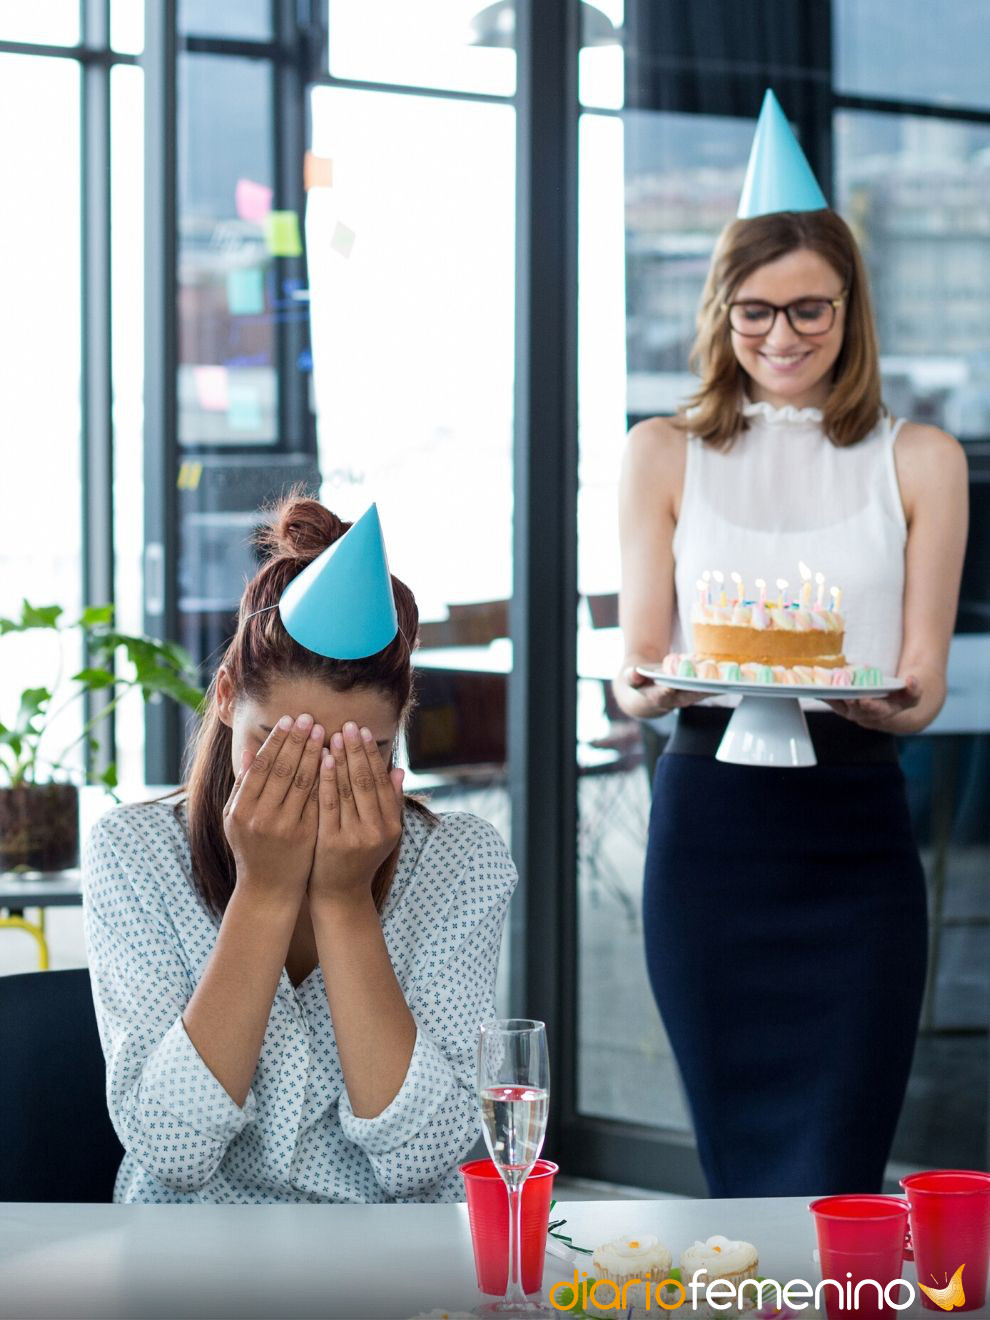 23 frases de cumpleaños para compañeros de trabajo (originales y bonitas)